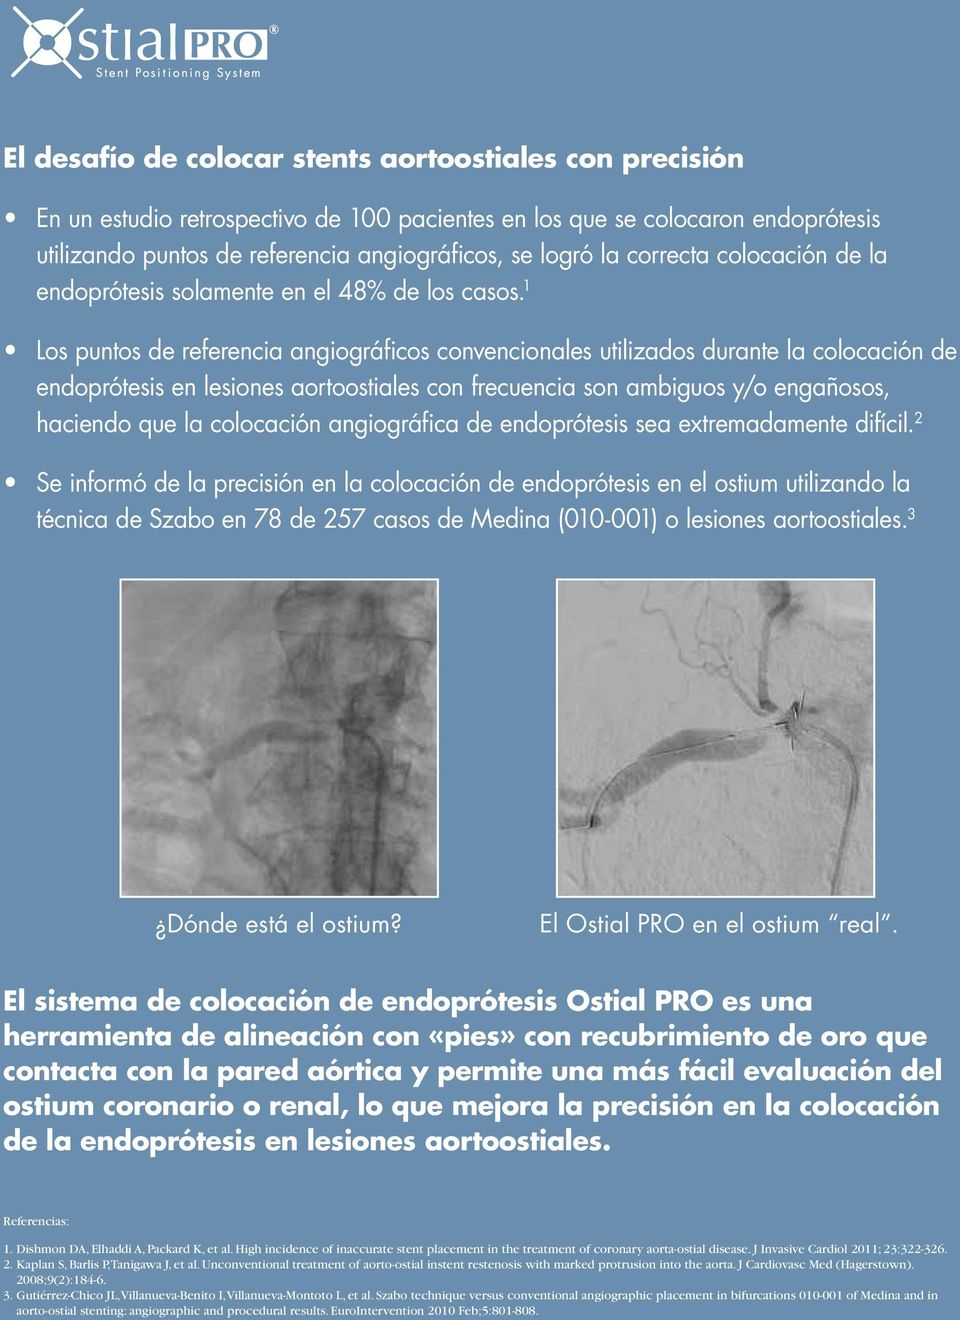 1 Los puntos de referencia angiográficos convencionales utilizados durante la colocación de endoprótesis en lesiones aortoostiales con frecuencia son ambiguos y/o engañosos, haciendo que la